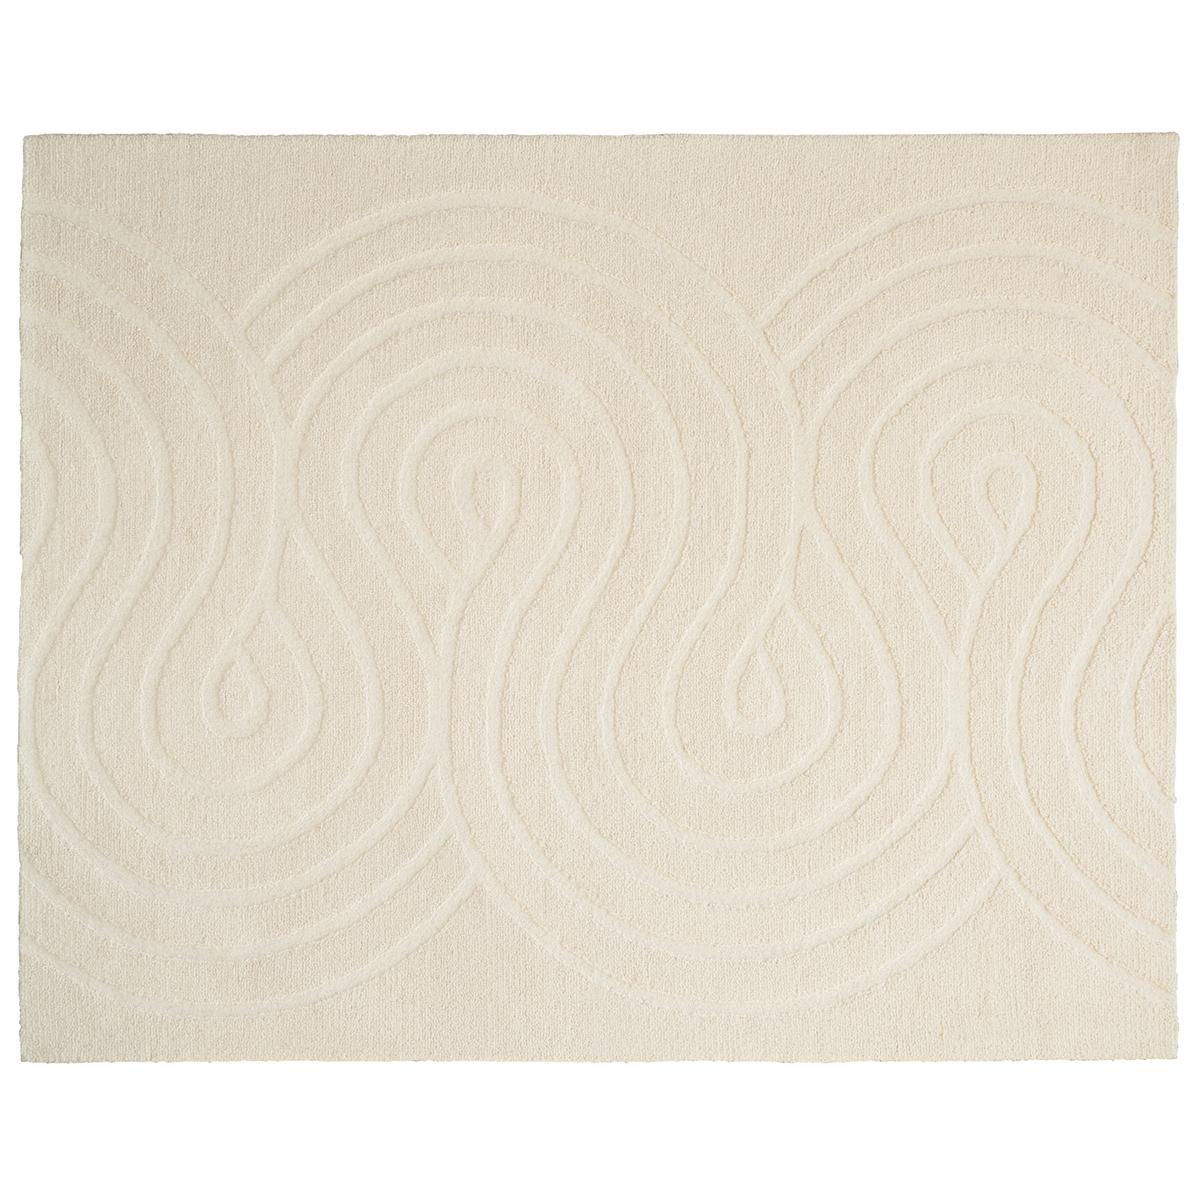 Tufté à la main et fabriqué en 100 % laine, Giraldi est un motif texturé magnifiquement travaillé avec un motif serpentin sinueux. Doux et subtil, mais aussi graphique et moderne, ce tapis s'impose avec élégance dans n'importe quelle pièce.